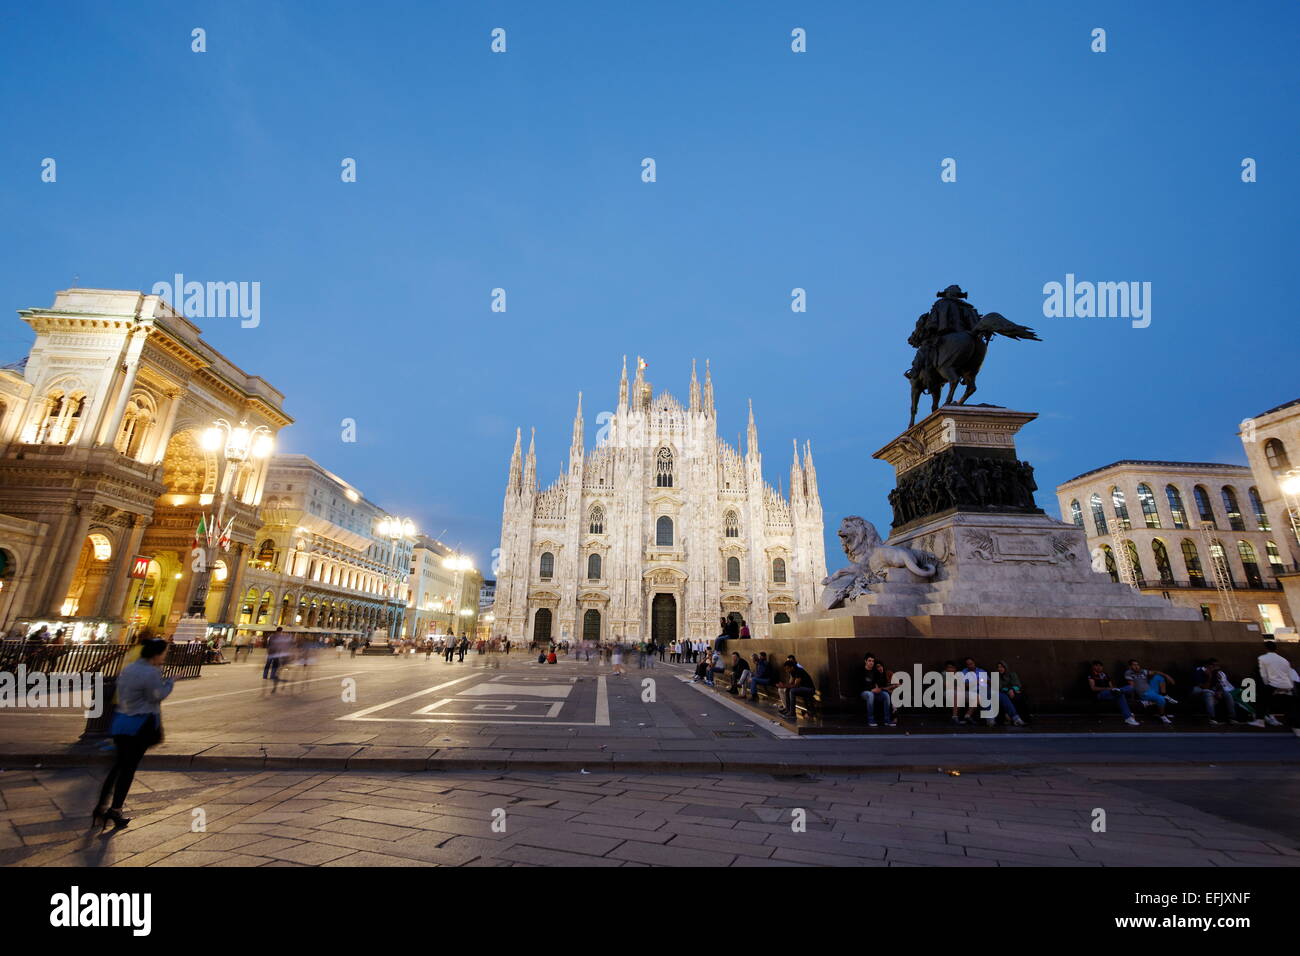 La Piazza del Duomo, con la estatua ecuestre, la catedral de Milán y la Galleria Vittorio Emanuele II, en la noche, Milán, Lombardía, Ital Foto de stock